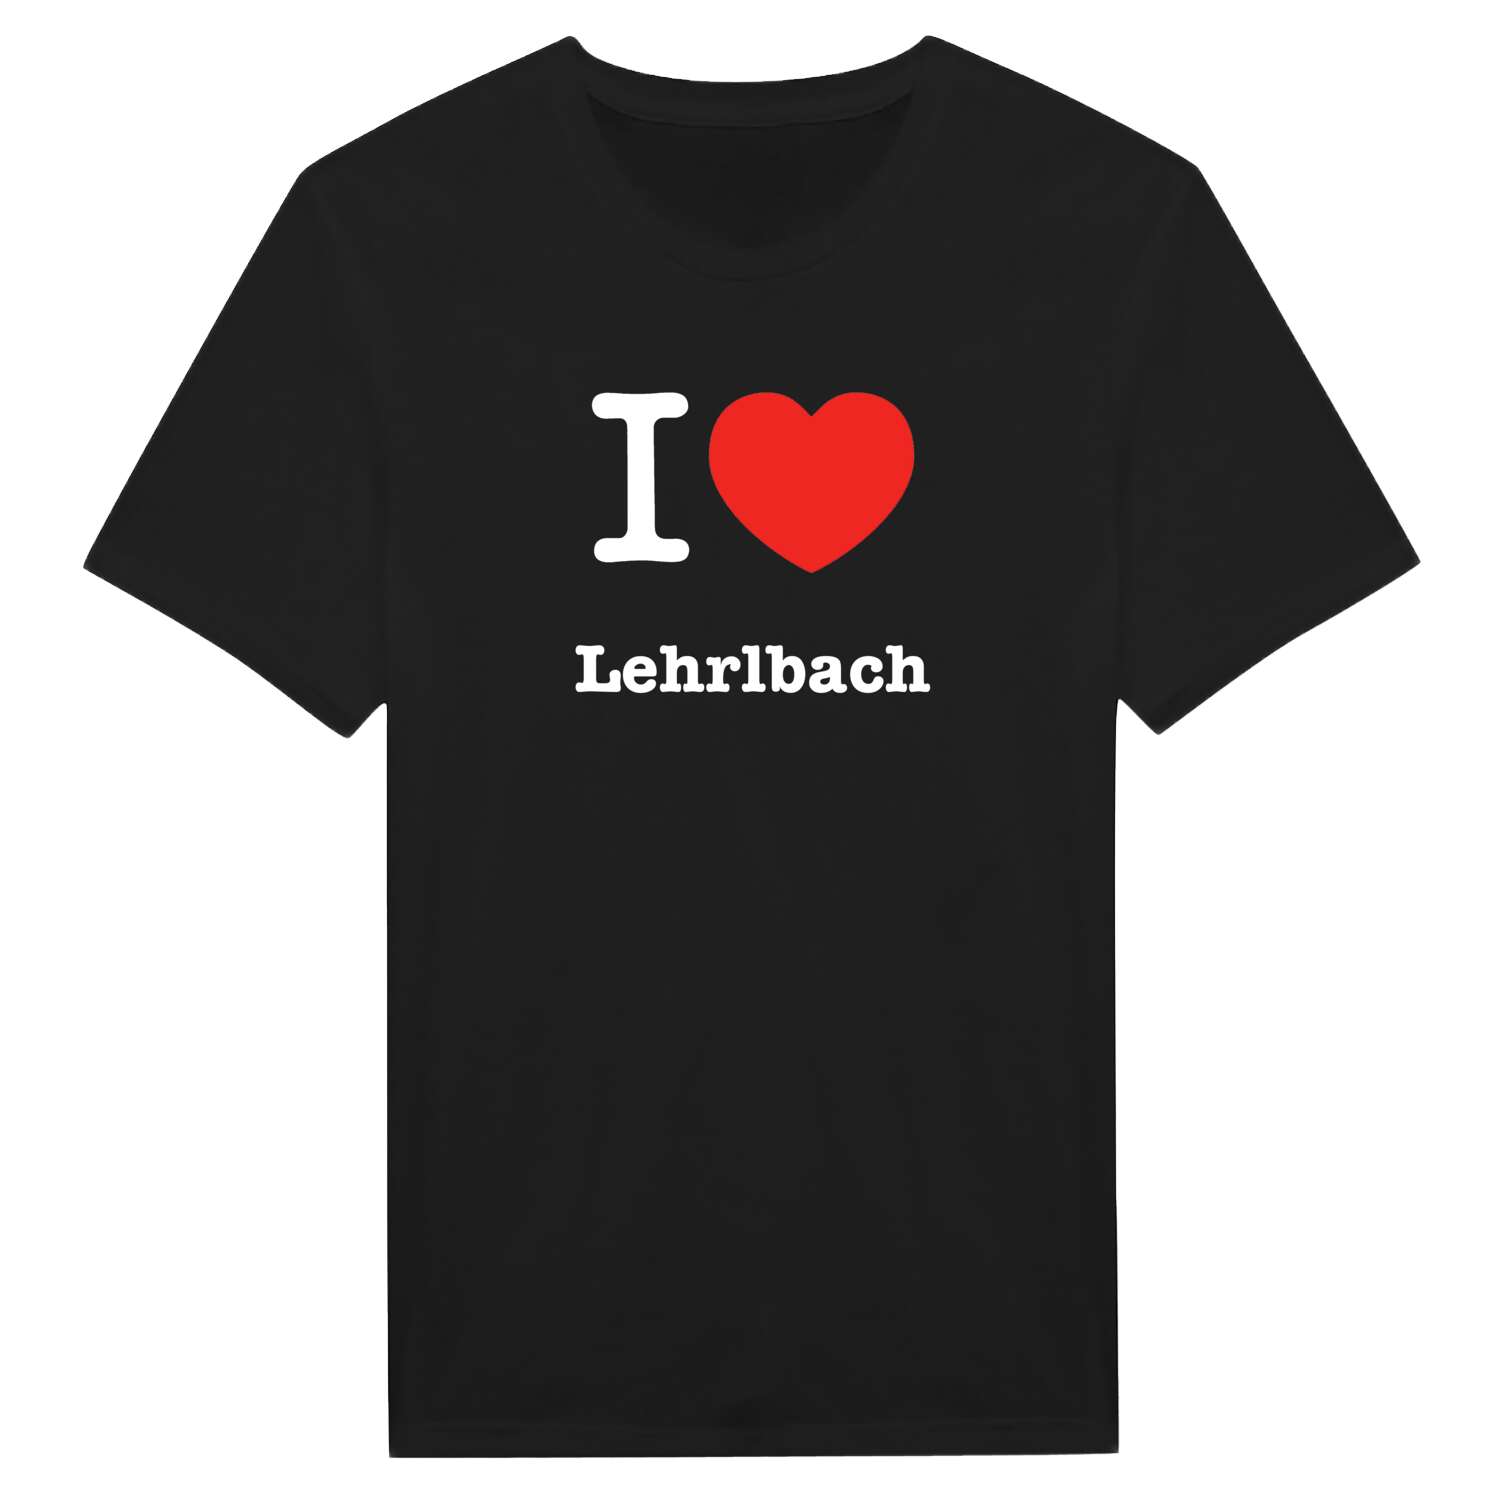 Lehrlbach T-Shirt »I love«